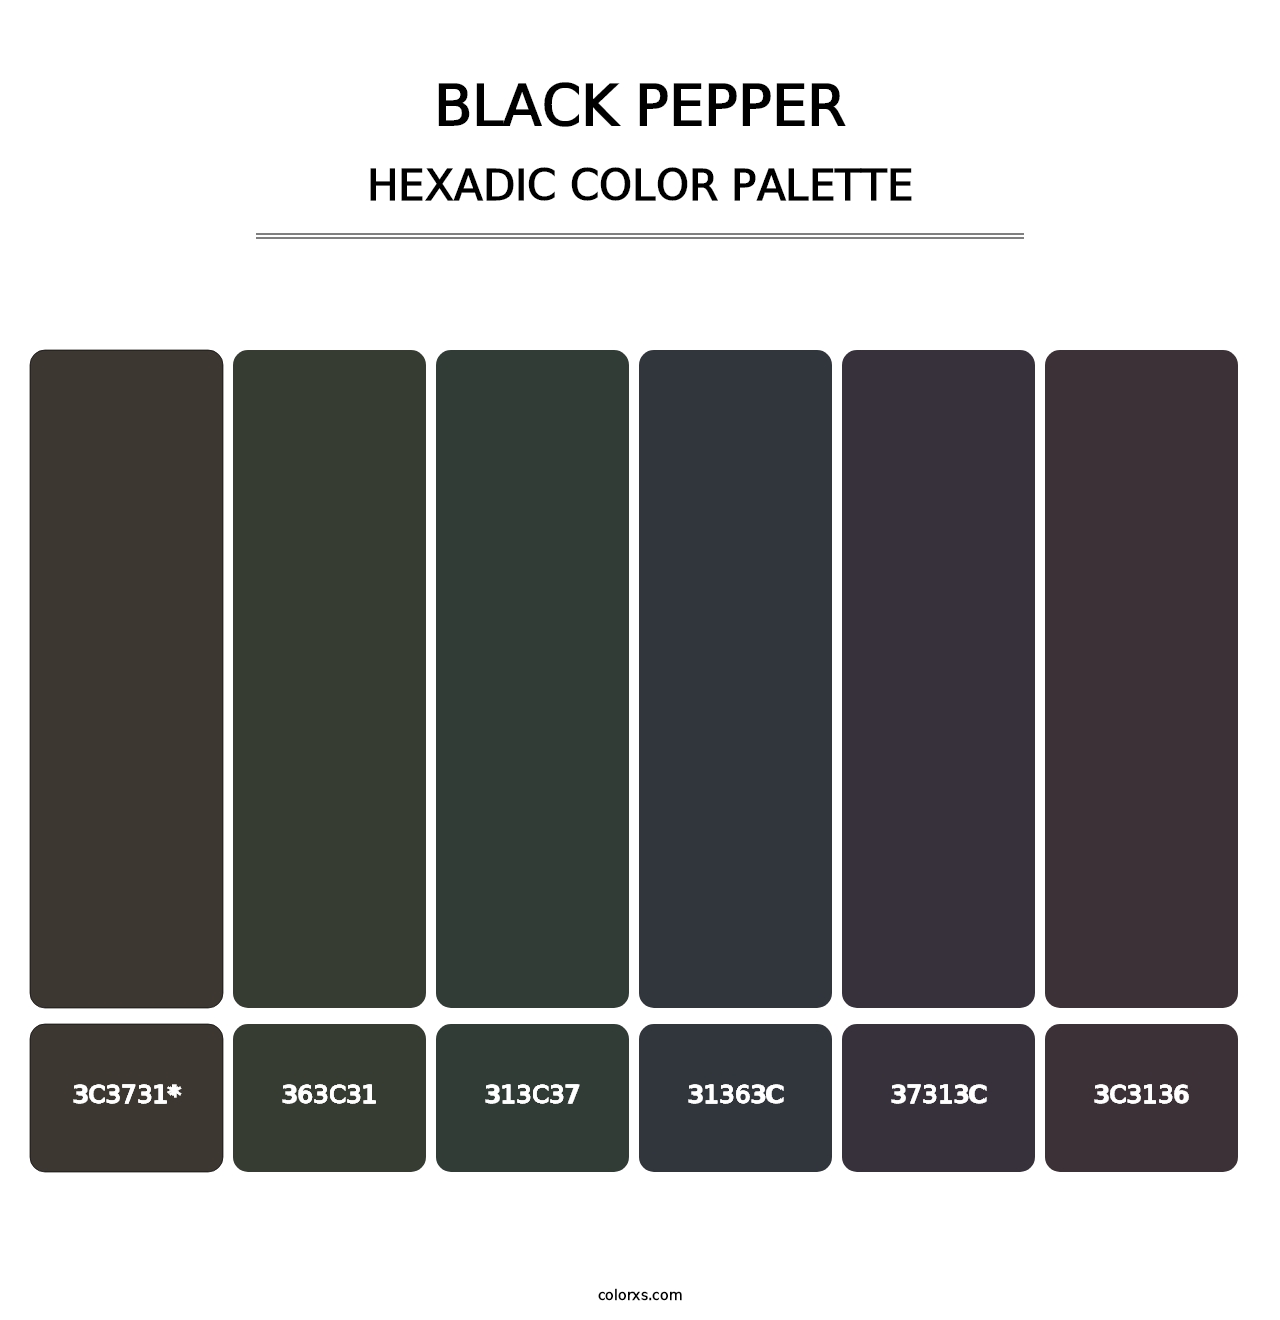 Black Pepper - Hexadic Color Palette